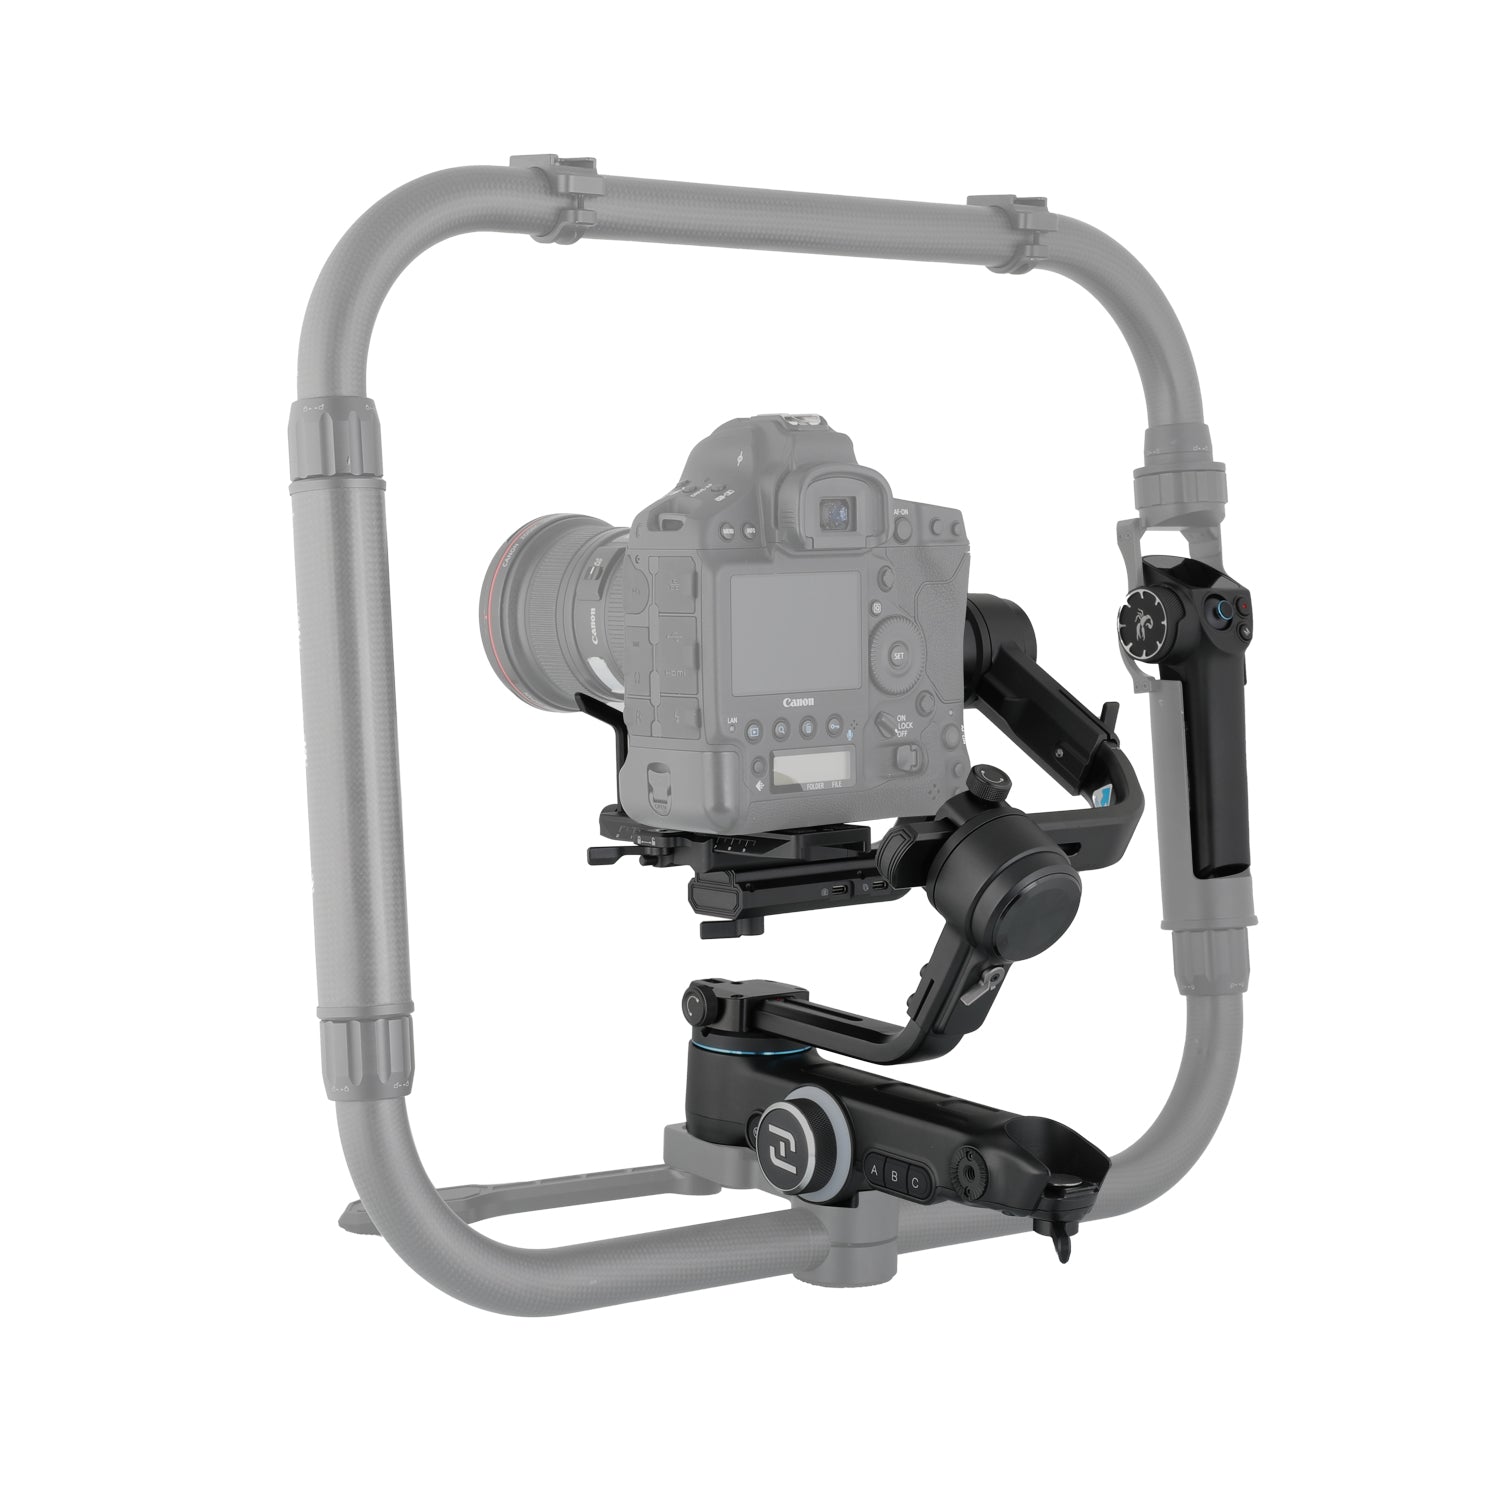 (Remis à neuf) SCORP Pro Stabilisateur de cardan professionnel détachable à 3 axes pour appareil photo reflex numérique sans miroir